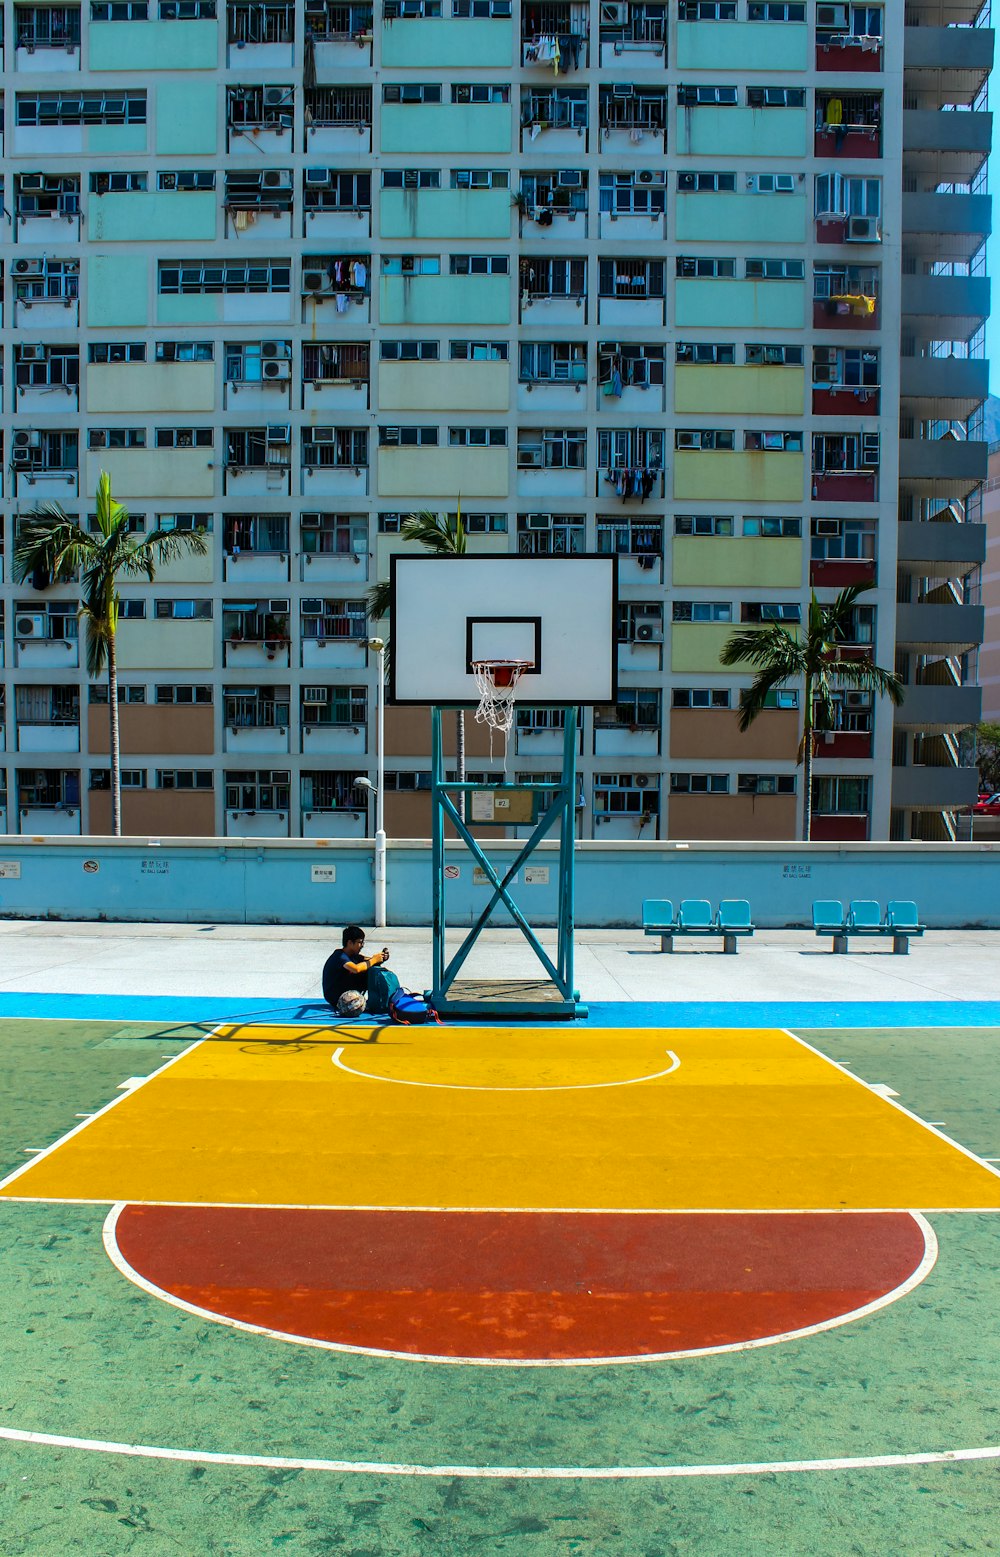 昼間、建物の近くでバスケットボールのフープの下に座っている男性